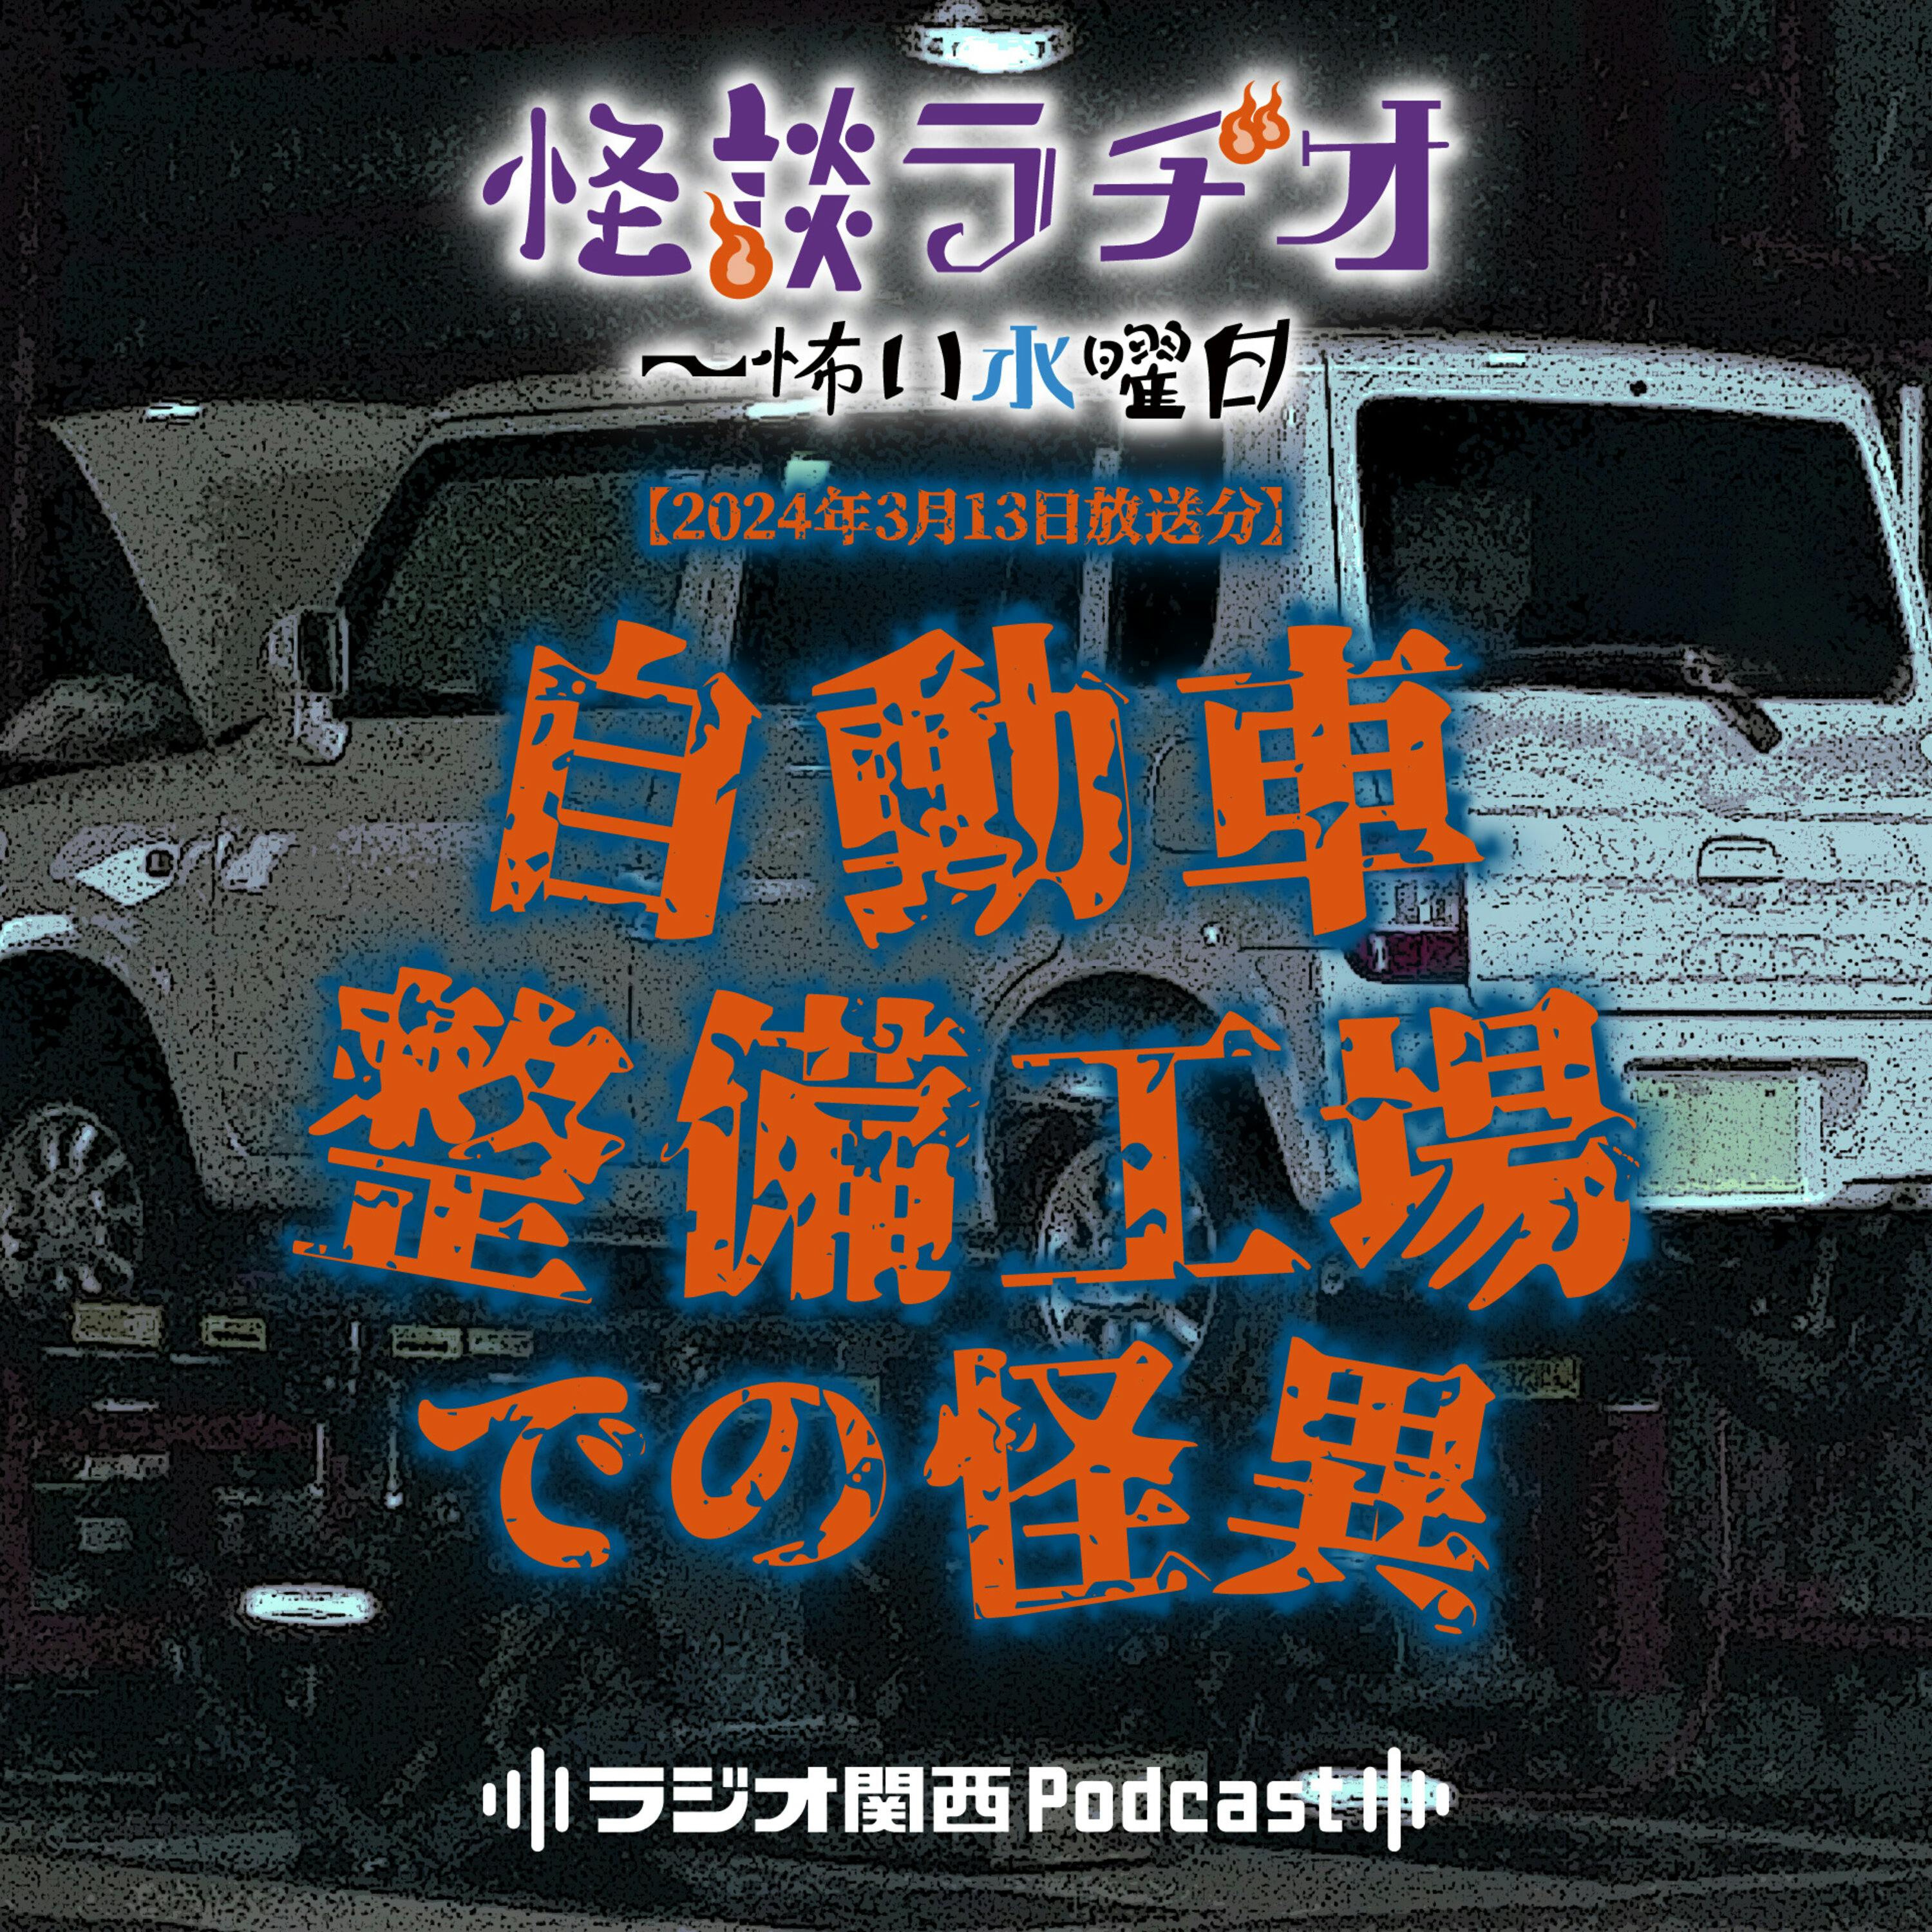 自動車整備工場での怪異【2024年3月13日放送分】